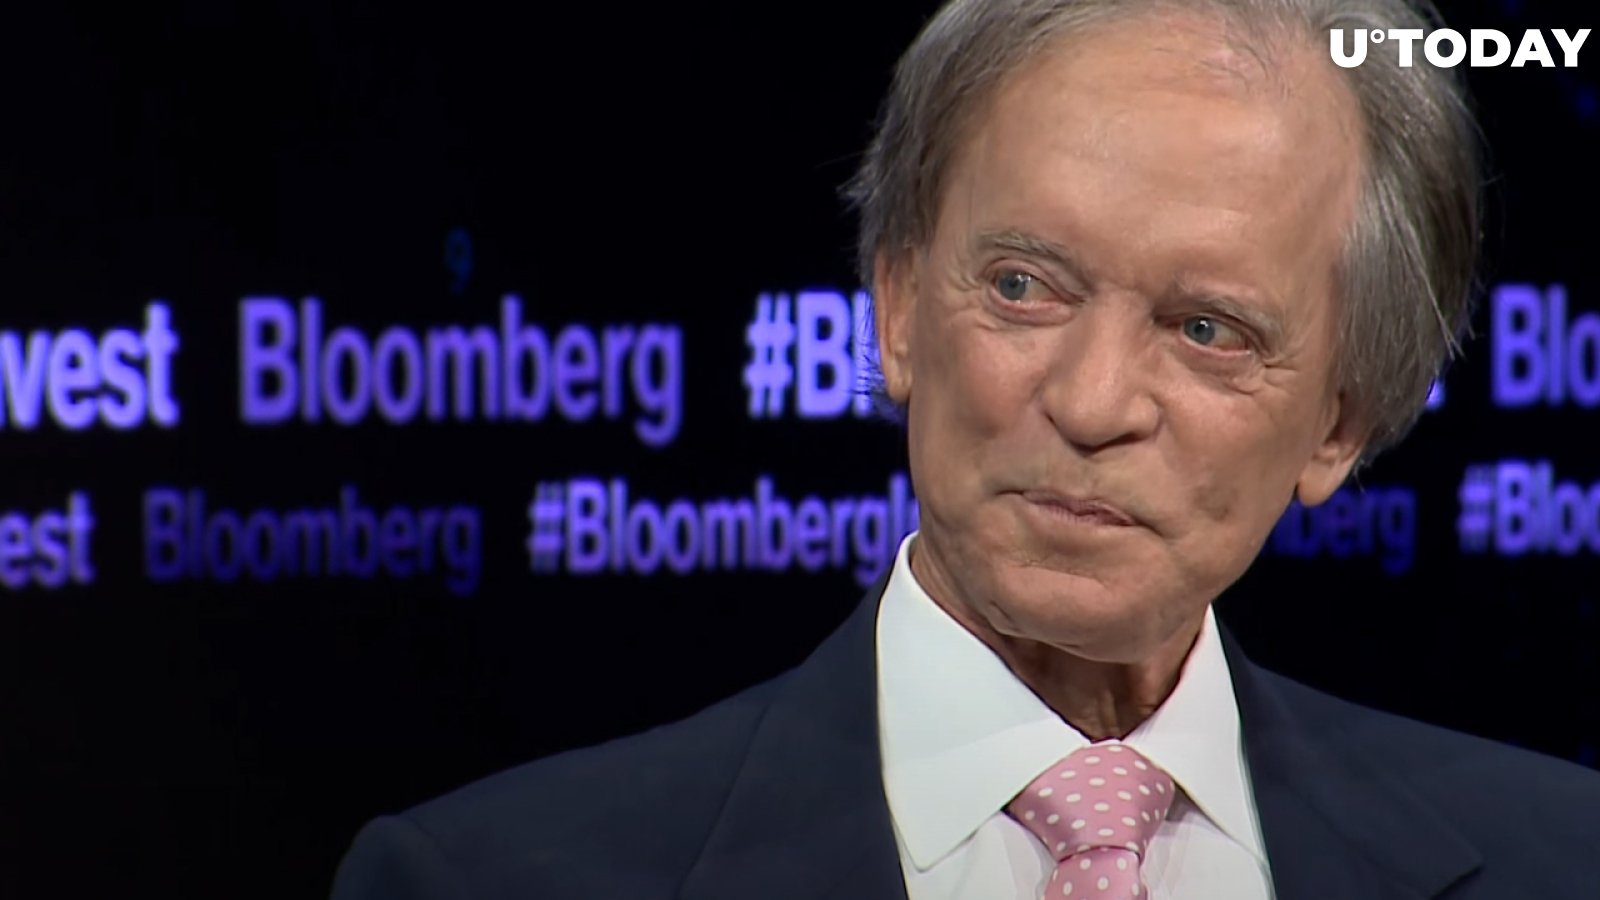 Famed Investor Bill Gross Warns About "Dangerous" Financial Euphoria